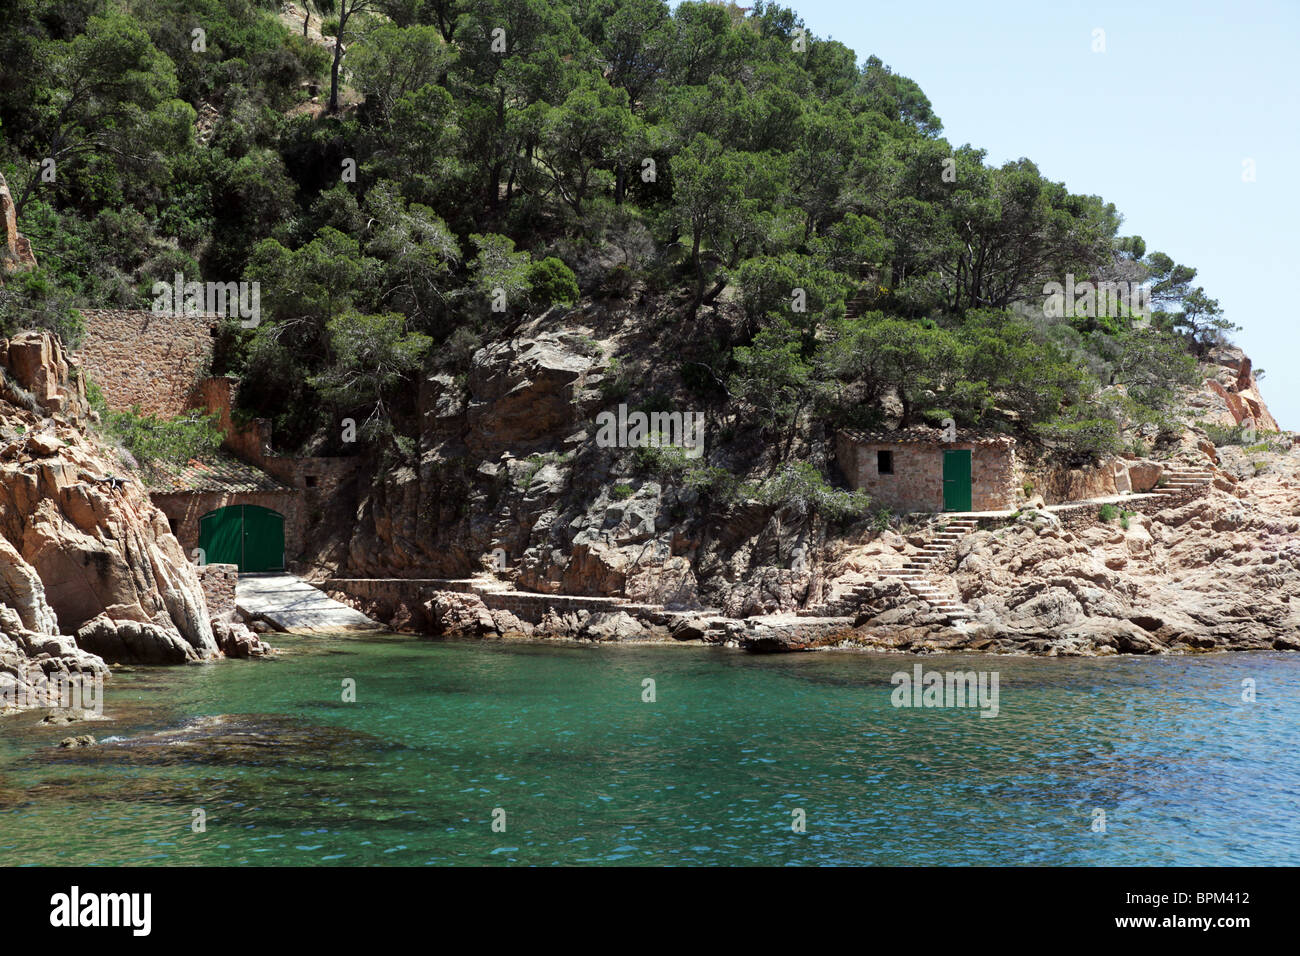 La tranquilla e appartata baia di Tamariu in Catalogna in Spagna Foto Stock